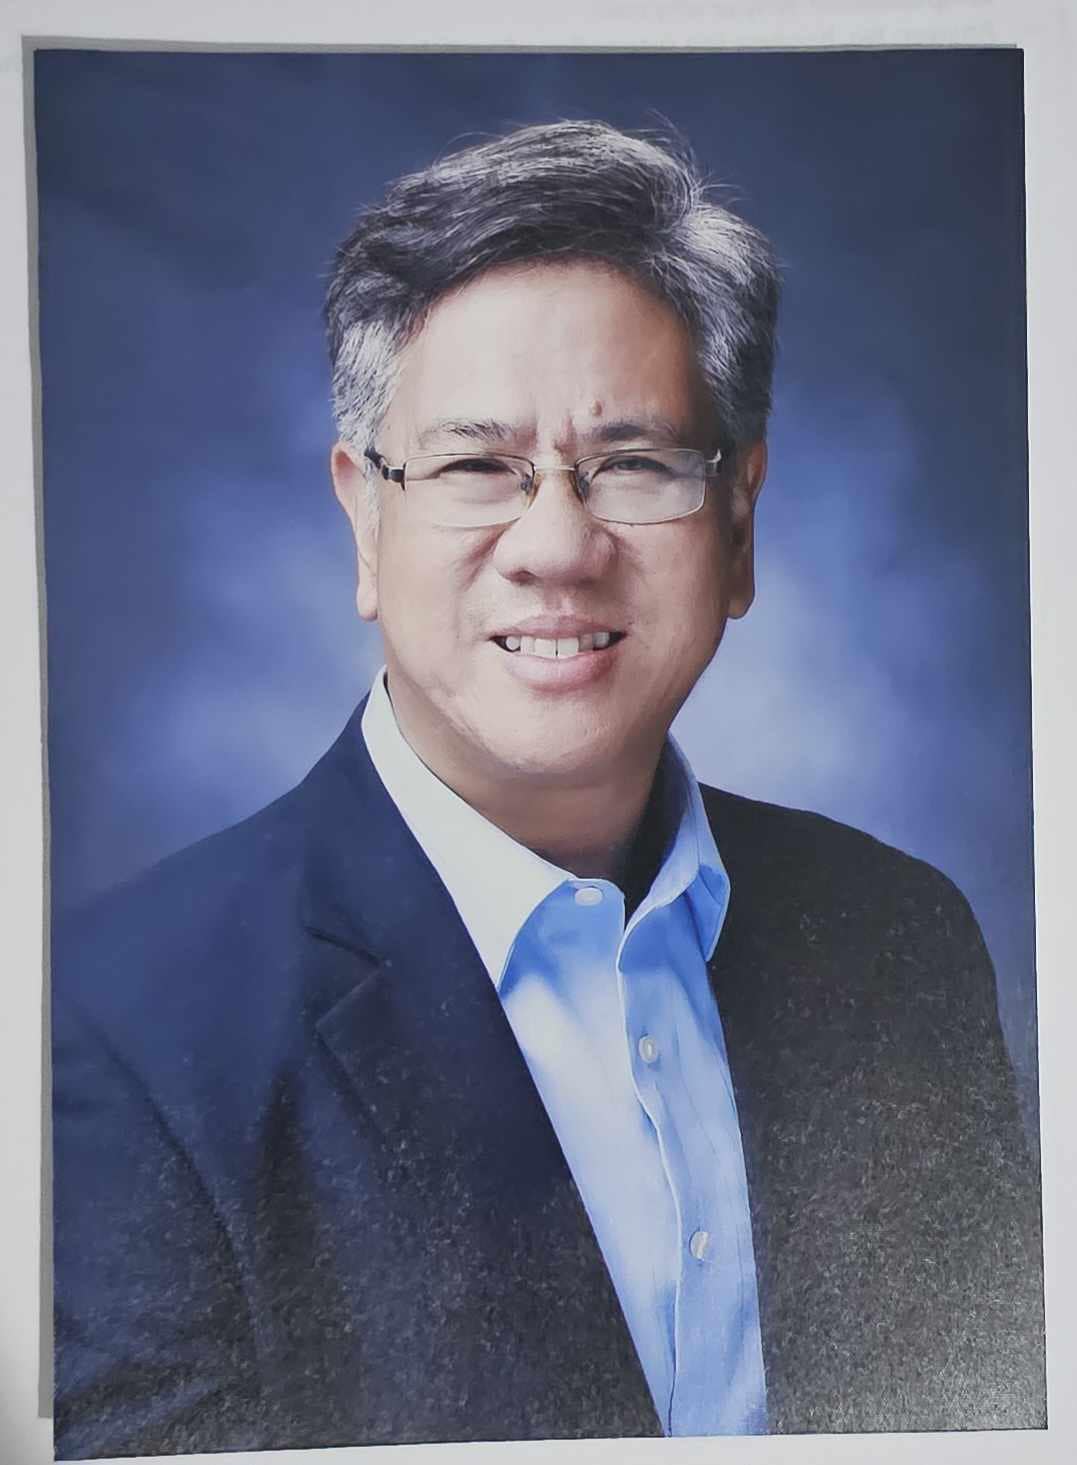 Atty. Domingo Reyes Jr. elected as the New President of Pamantasan ng Lungsod ng Maynila